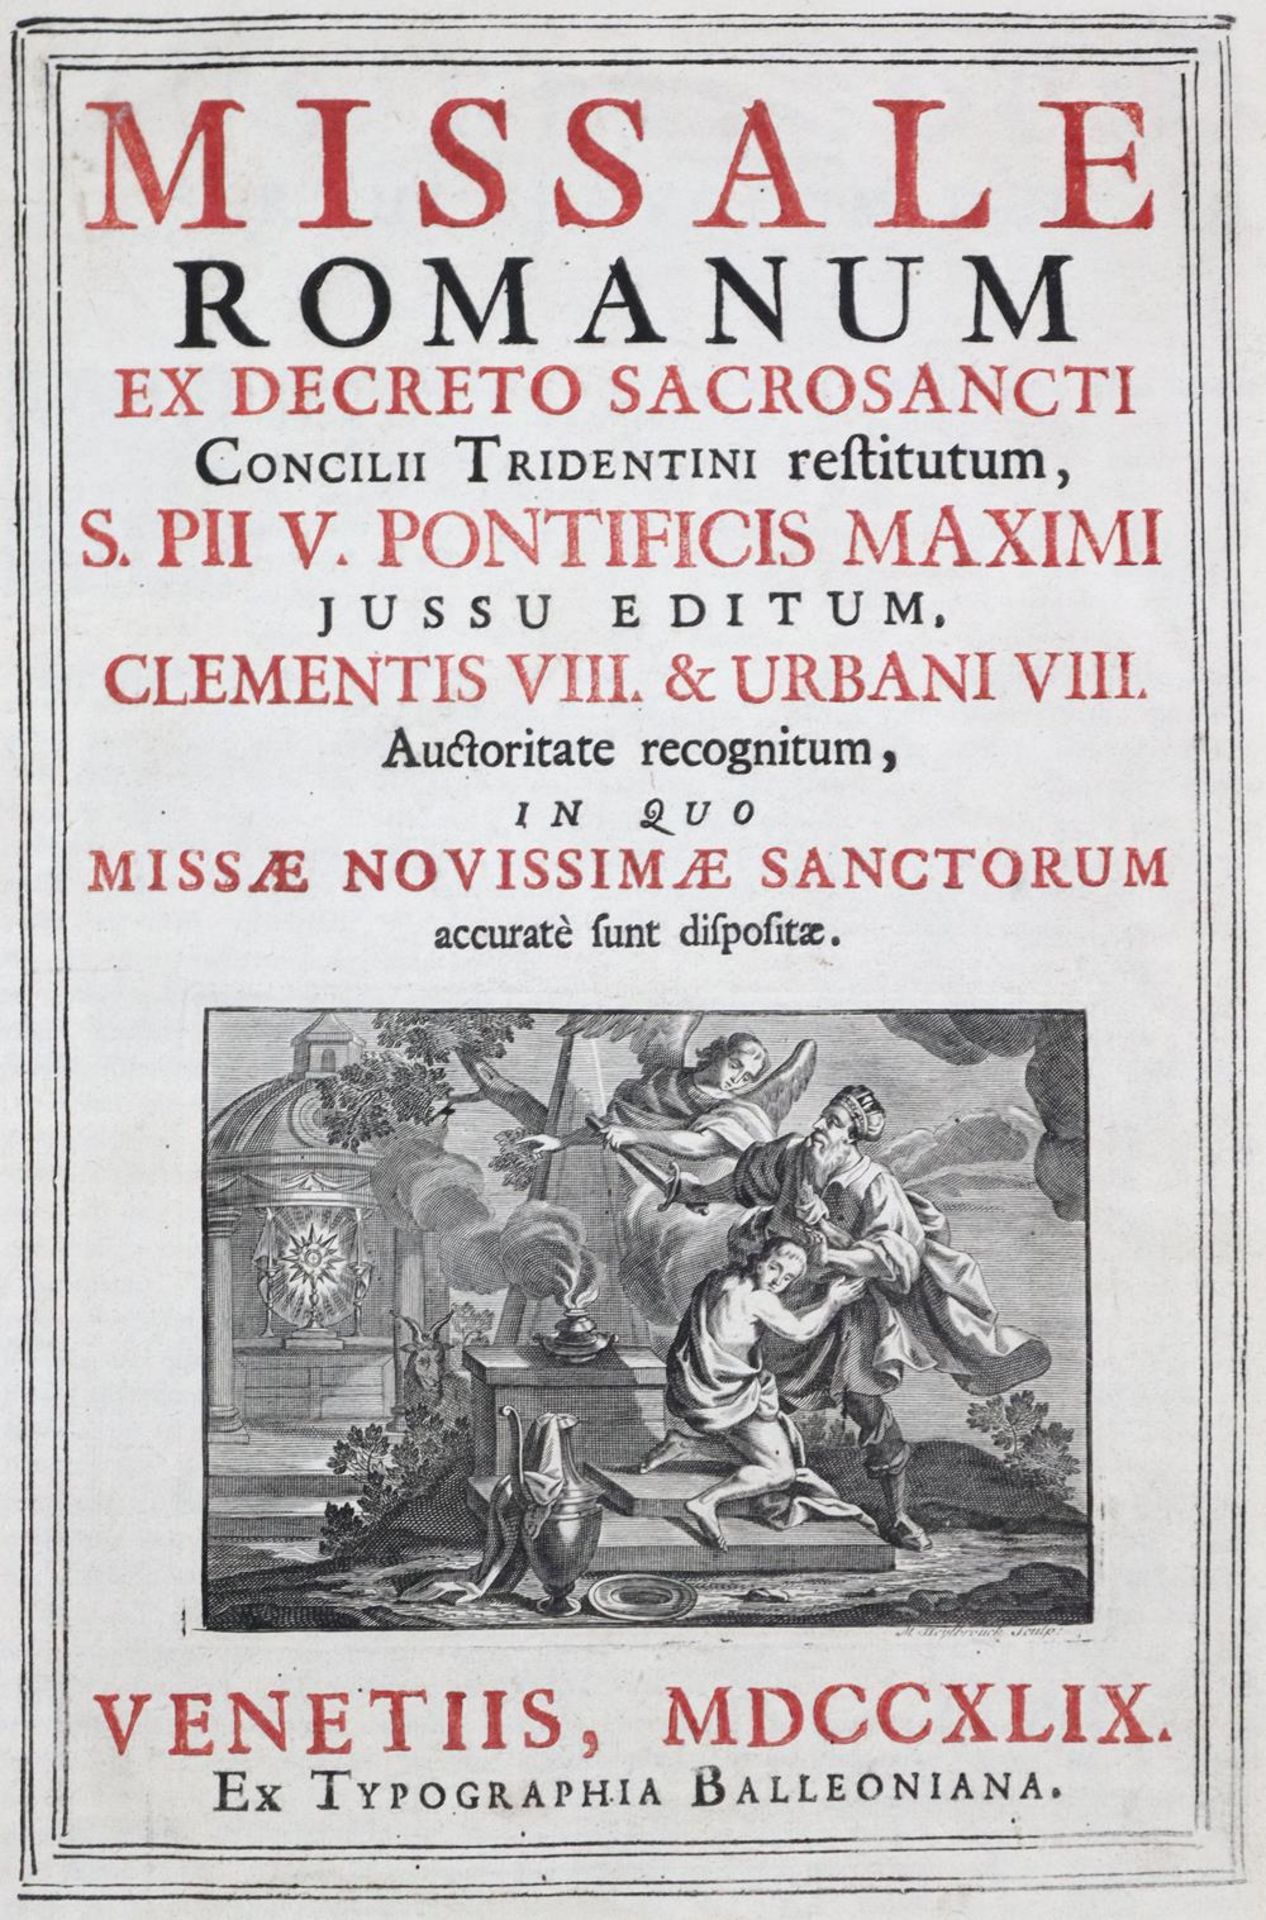 Missale Romanumex decreto sacrosancti Concillii Tridentini restitutum... auctoritate recognitum, - Image 2 of 2